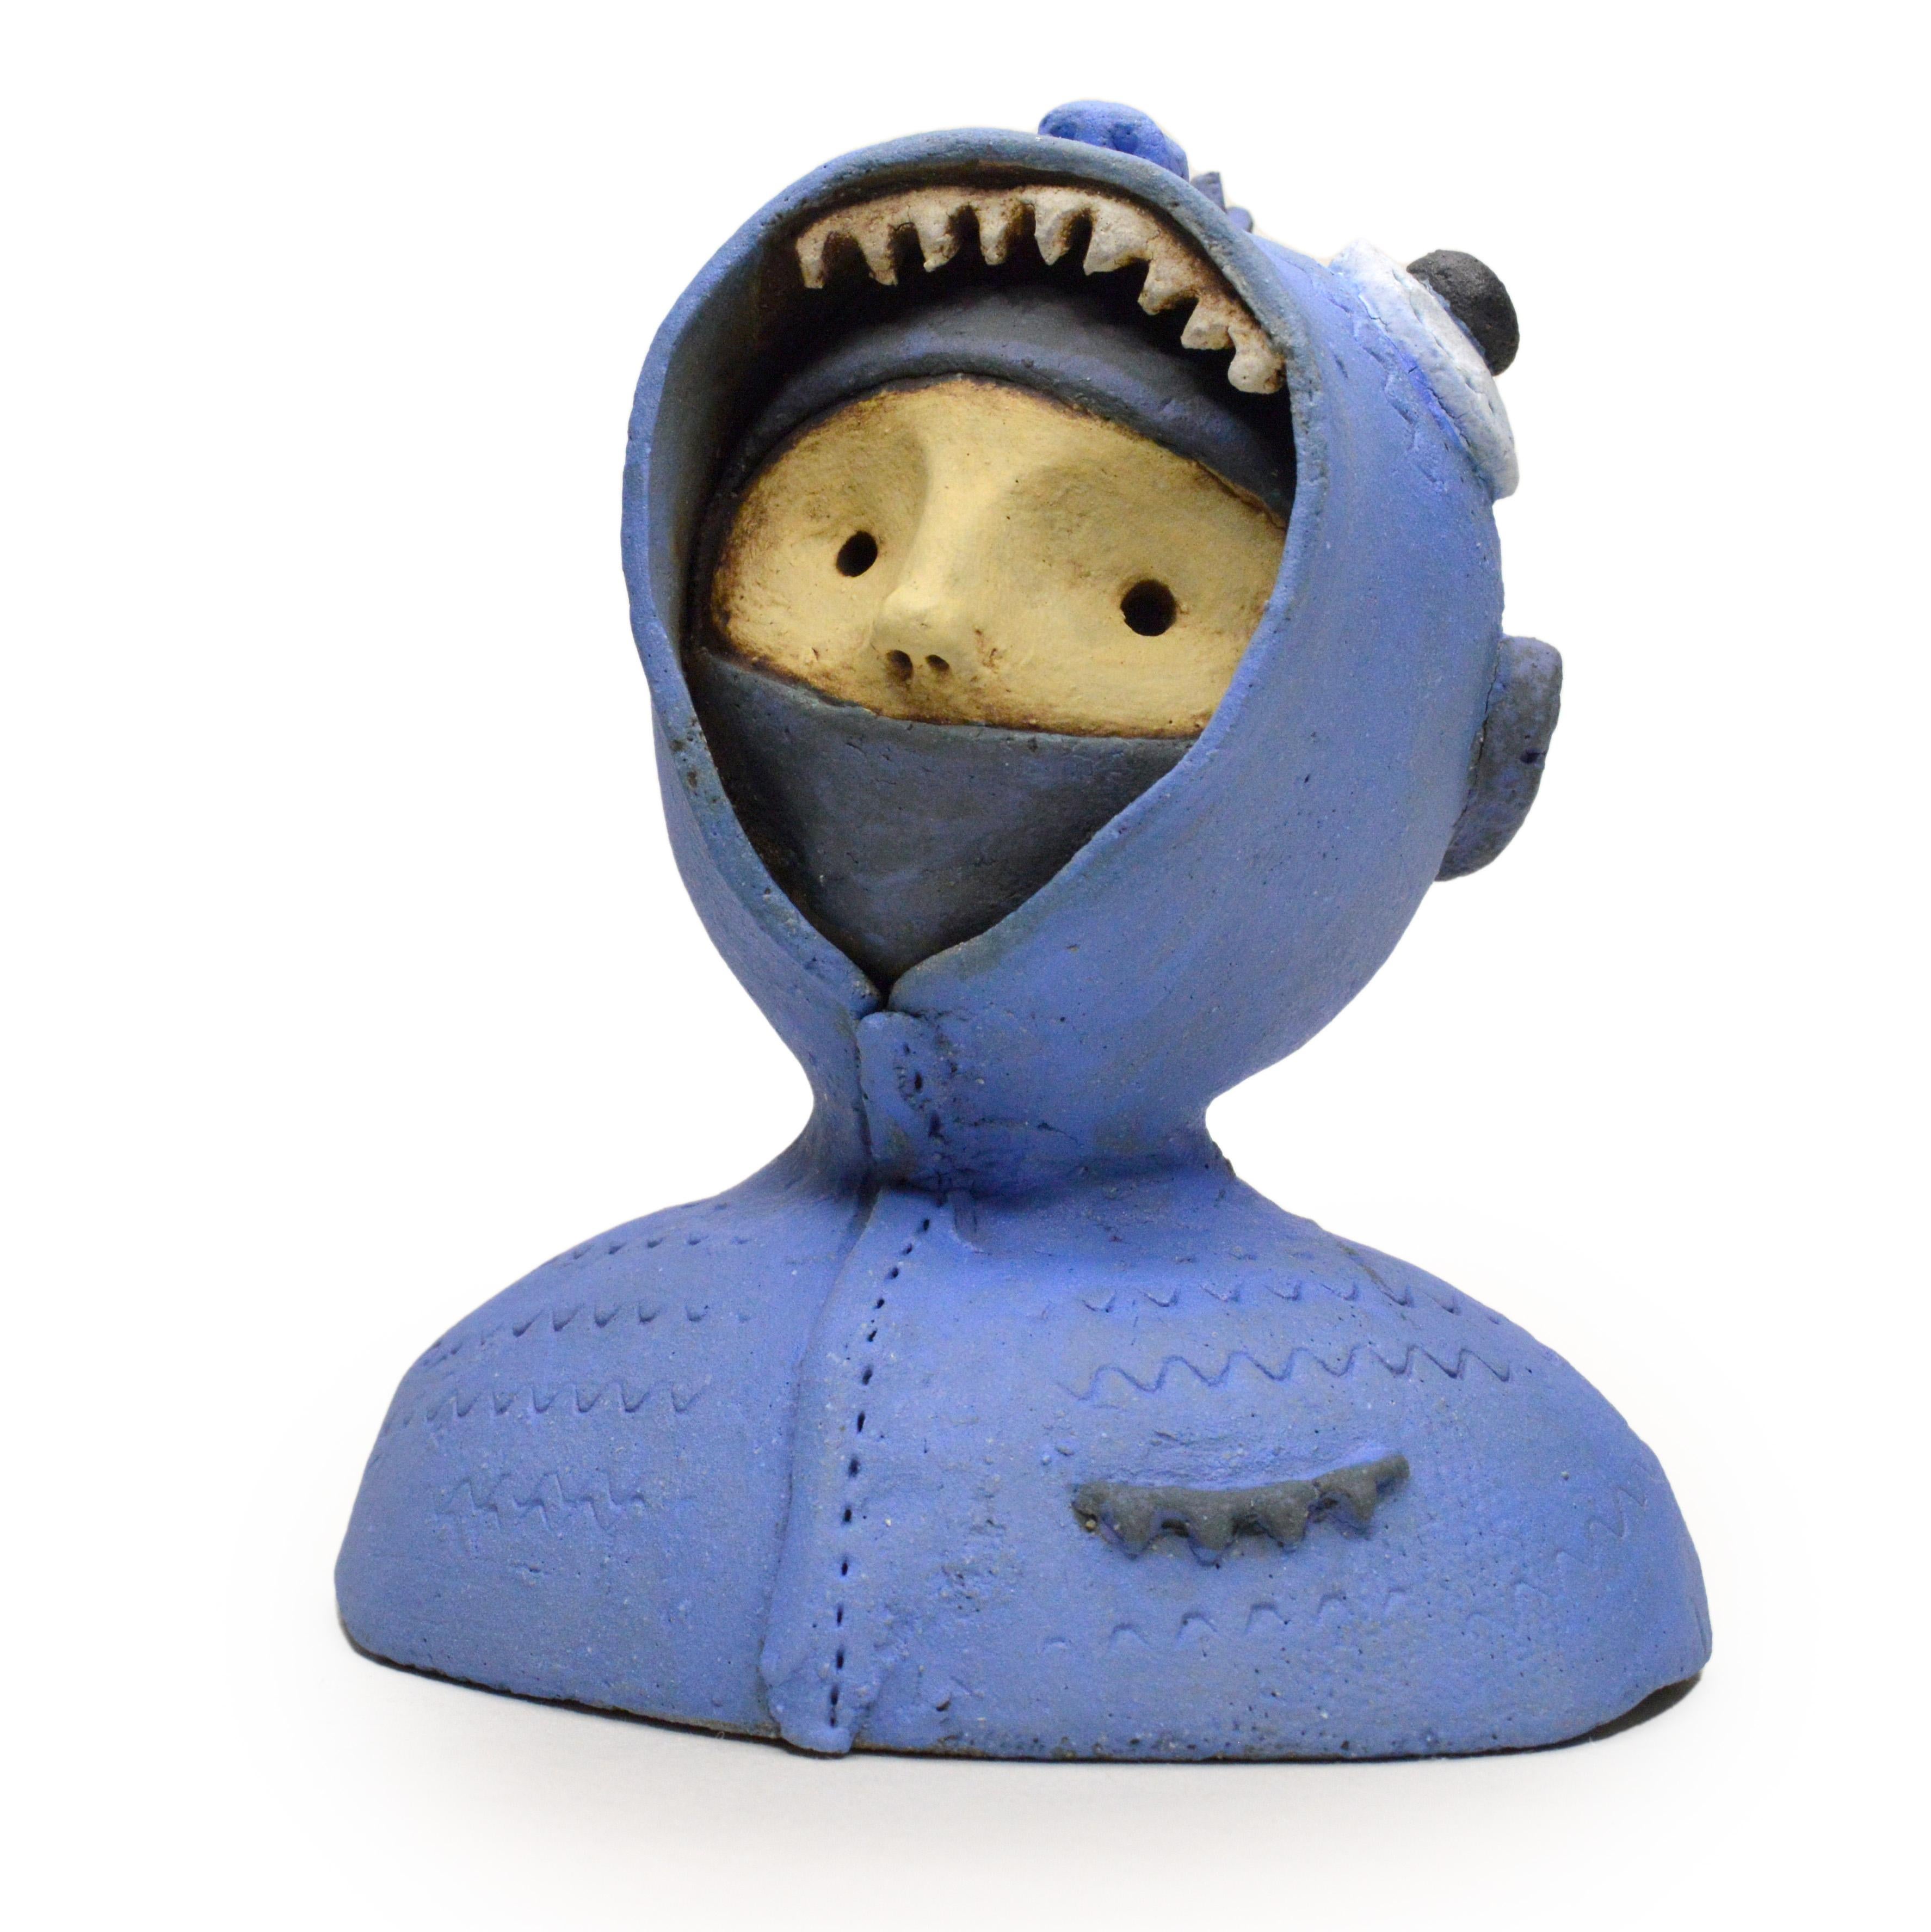 Renate Frotscher Figurative Sculpture - Pin·e·co 019 Original Ceramic Sculpture with a fish hoodie